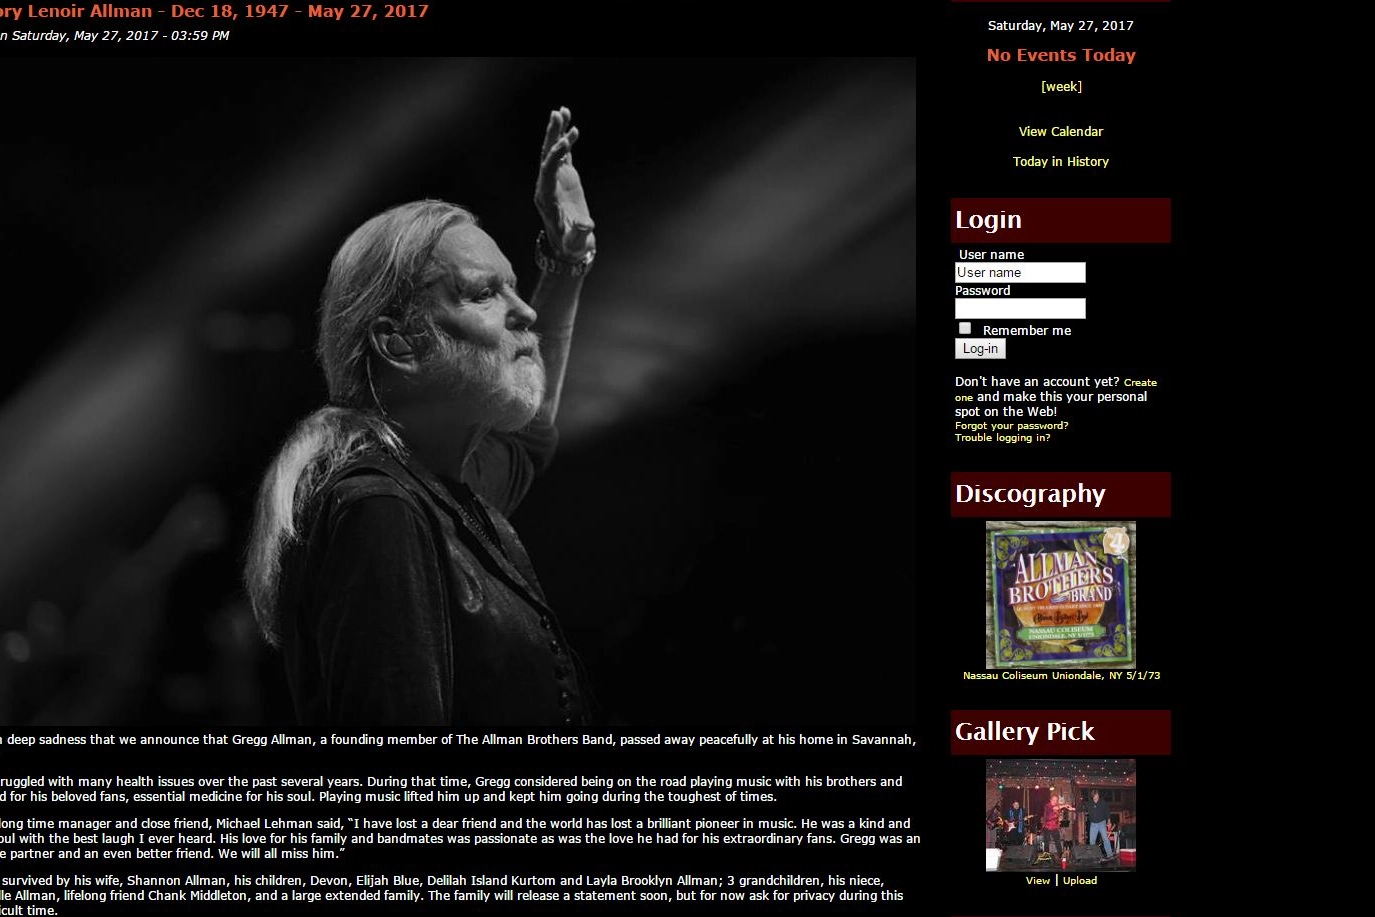 L'addio a Gregg Allman sul sito della band (da http://www.allmanbrothersband.com)